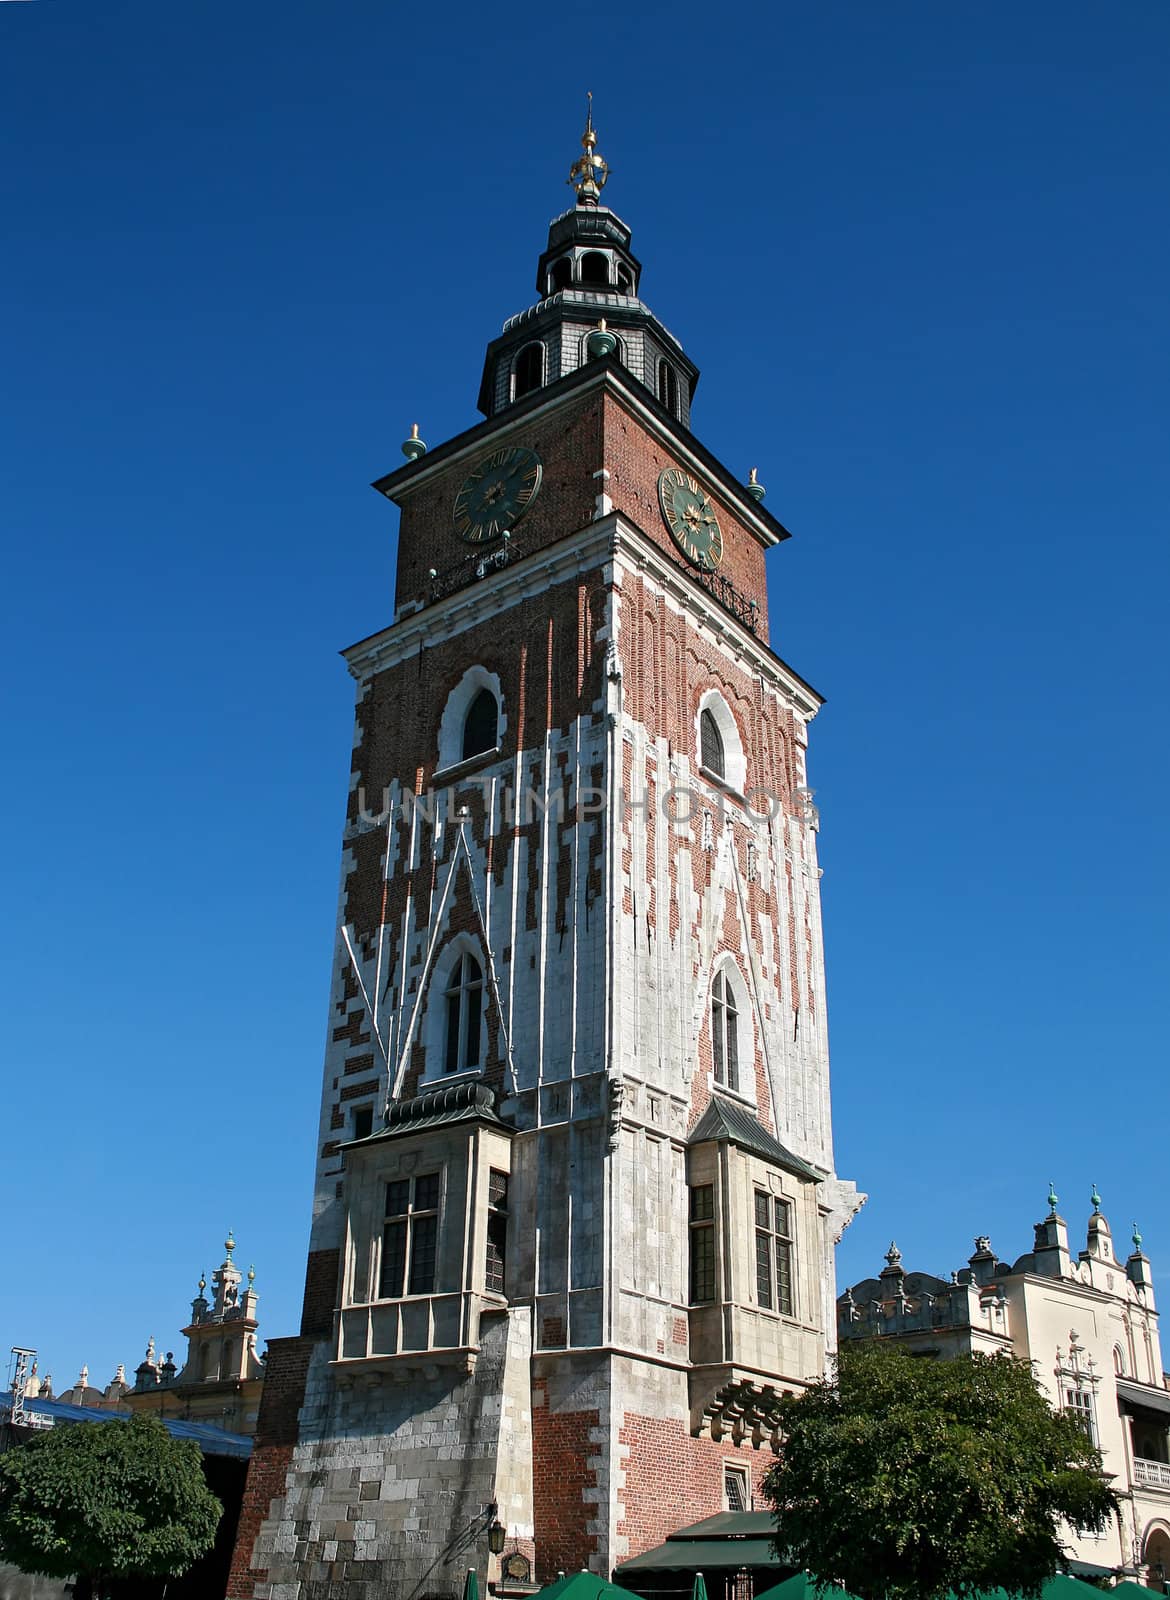 Tower in center of Krakow, Poland by Gdolgikh